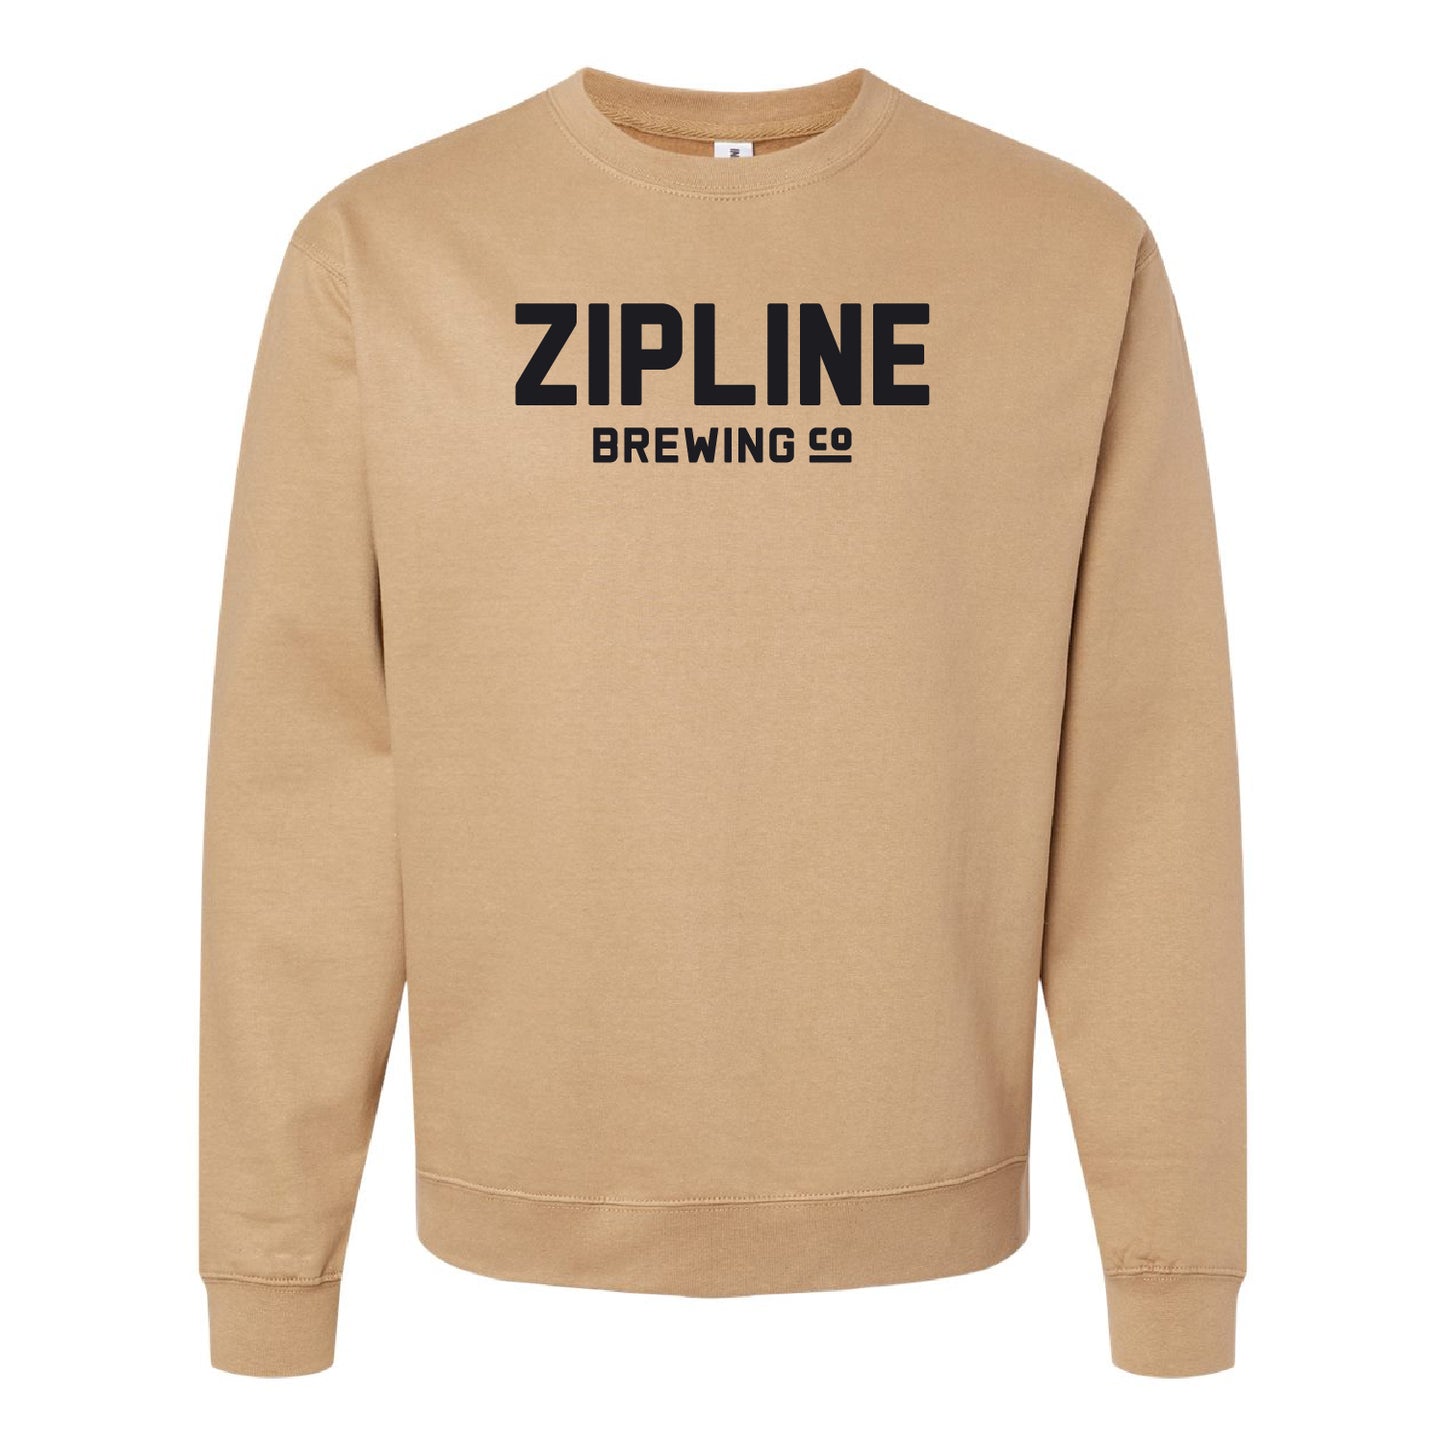 Zipline Brewing Co. Midweight Sweatshirt